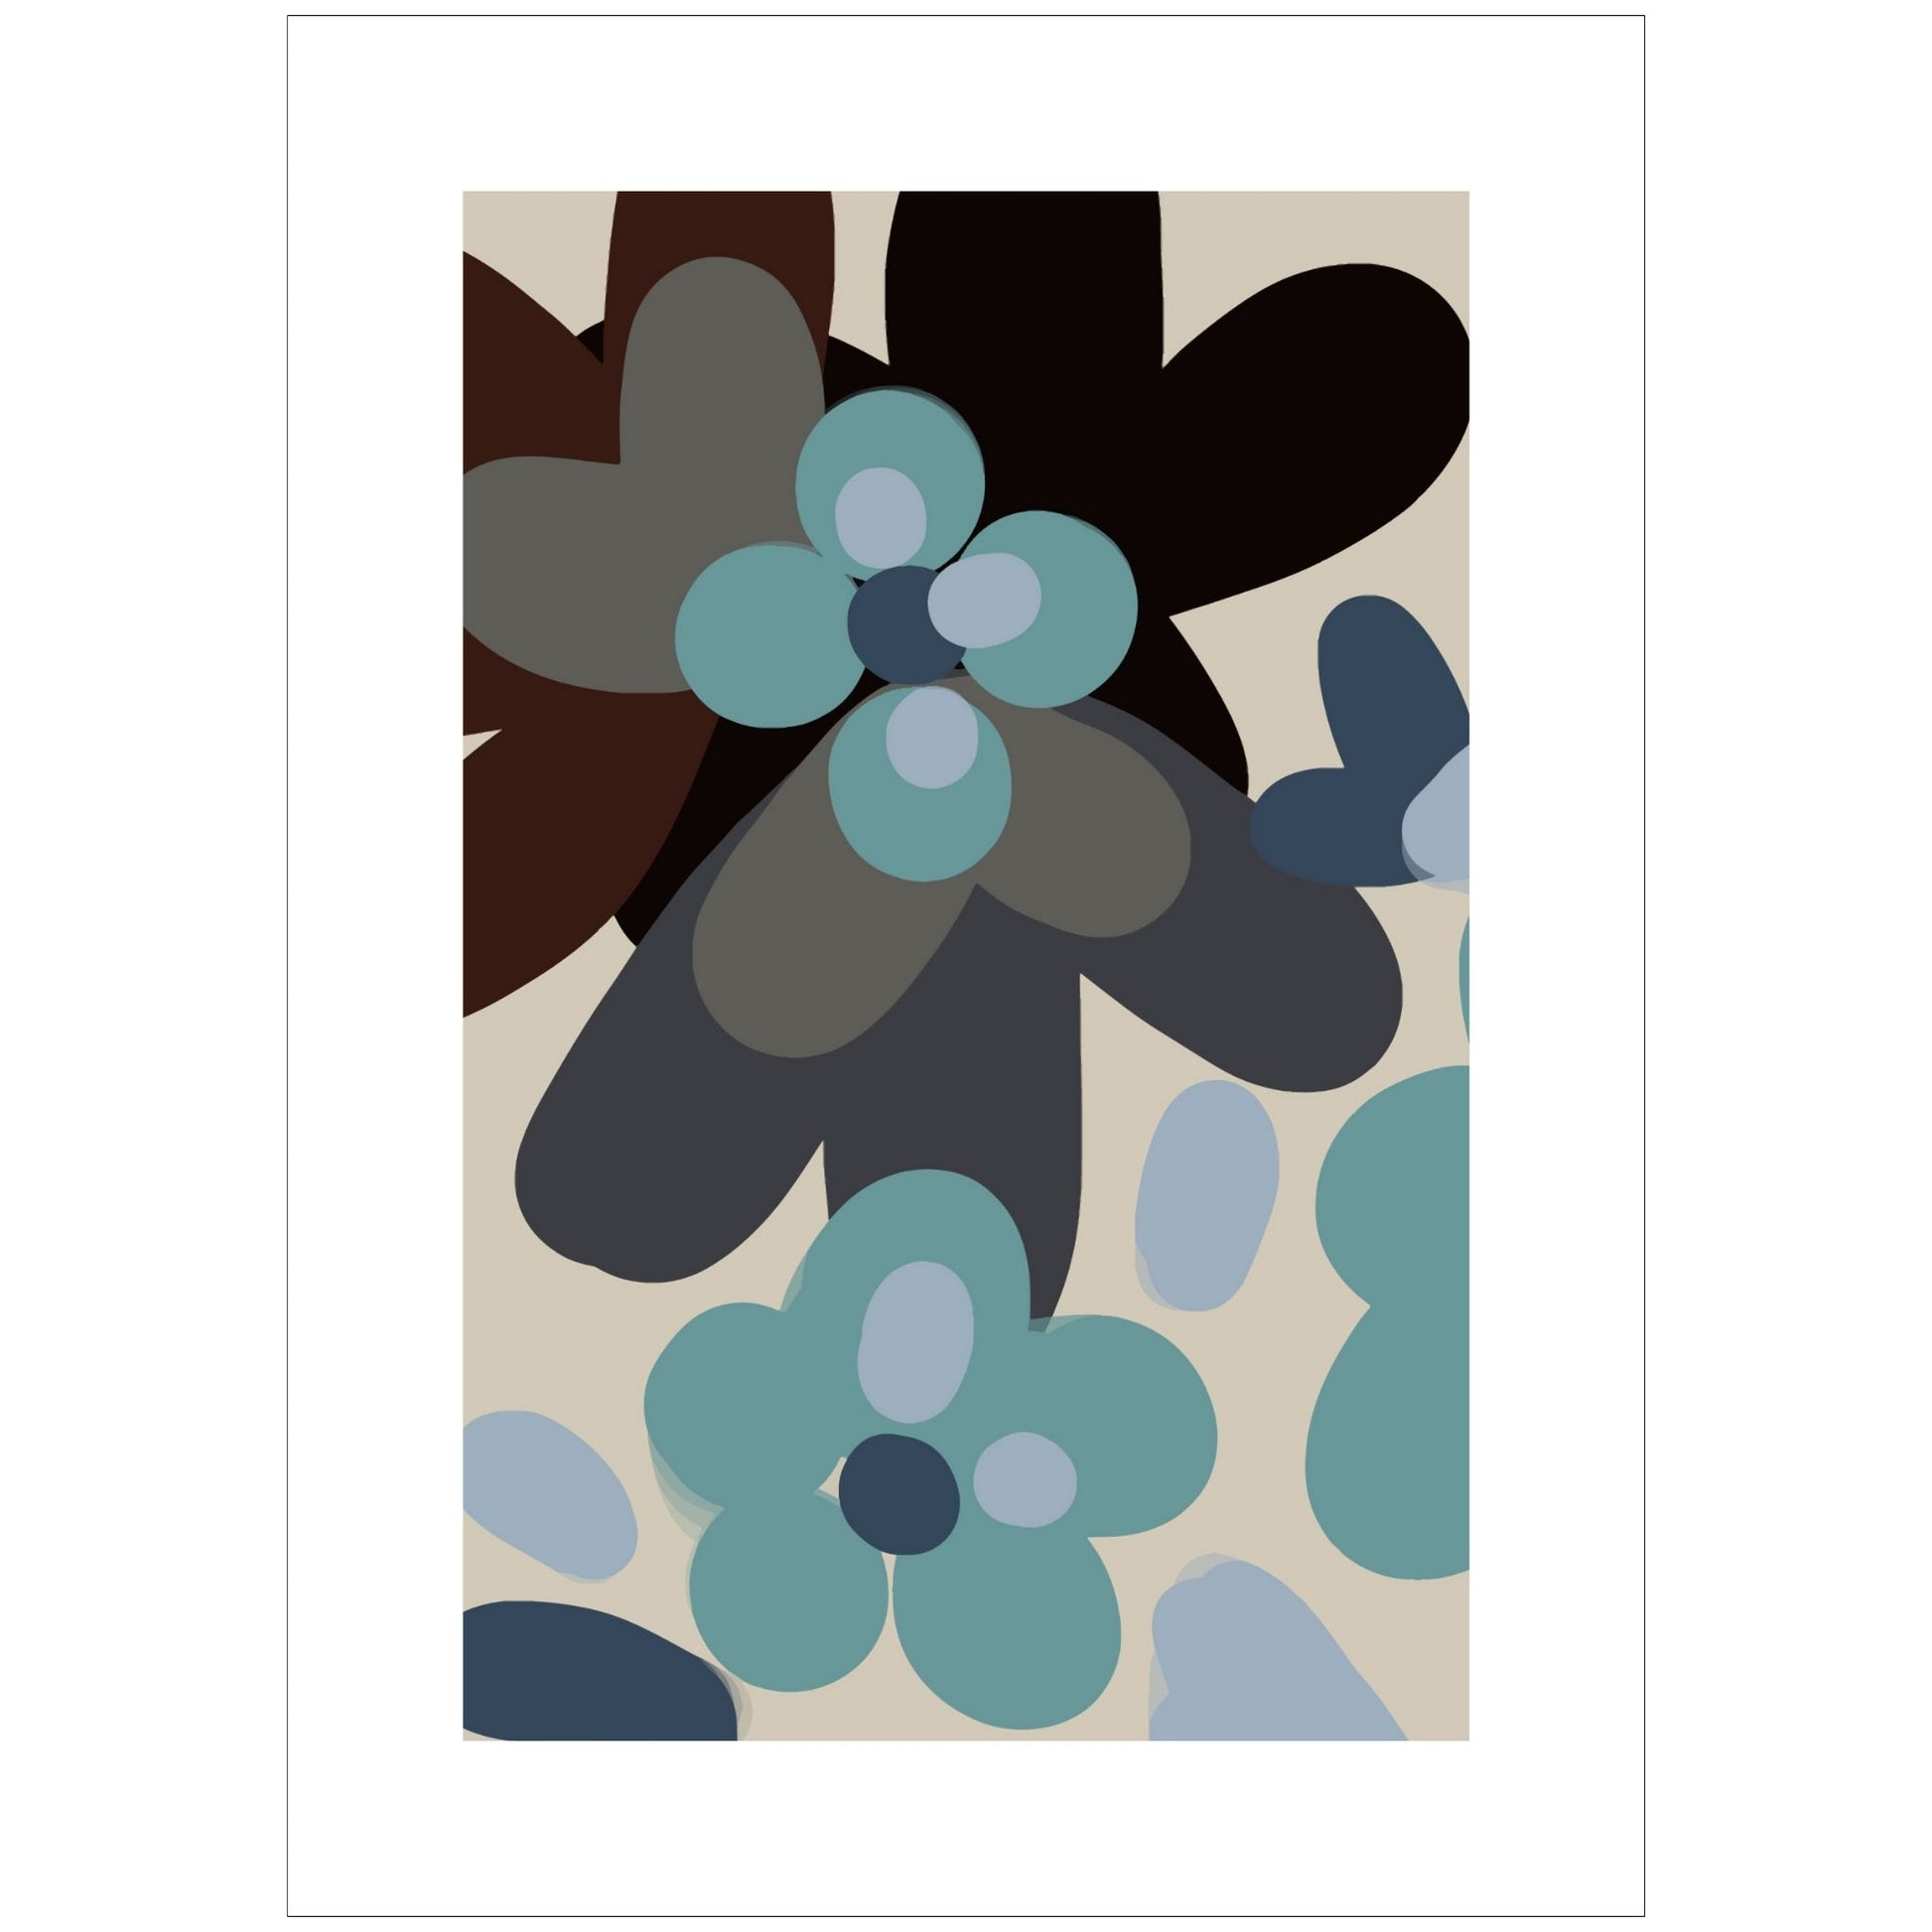 Abstrakt Flowers No1 - grafisk plakat i blått, sort, burgunder, petrol og beige fargetoner. Plakaten har en bred hvit kant som gir dybde og fremhever bildet.